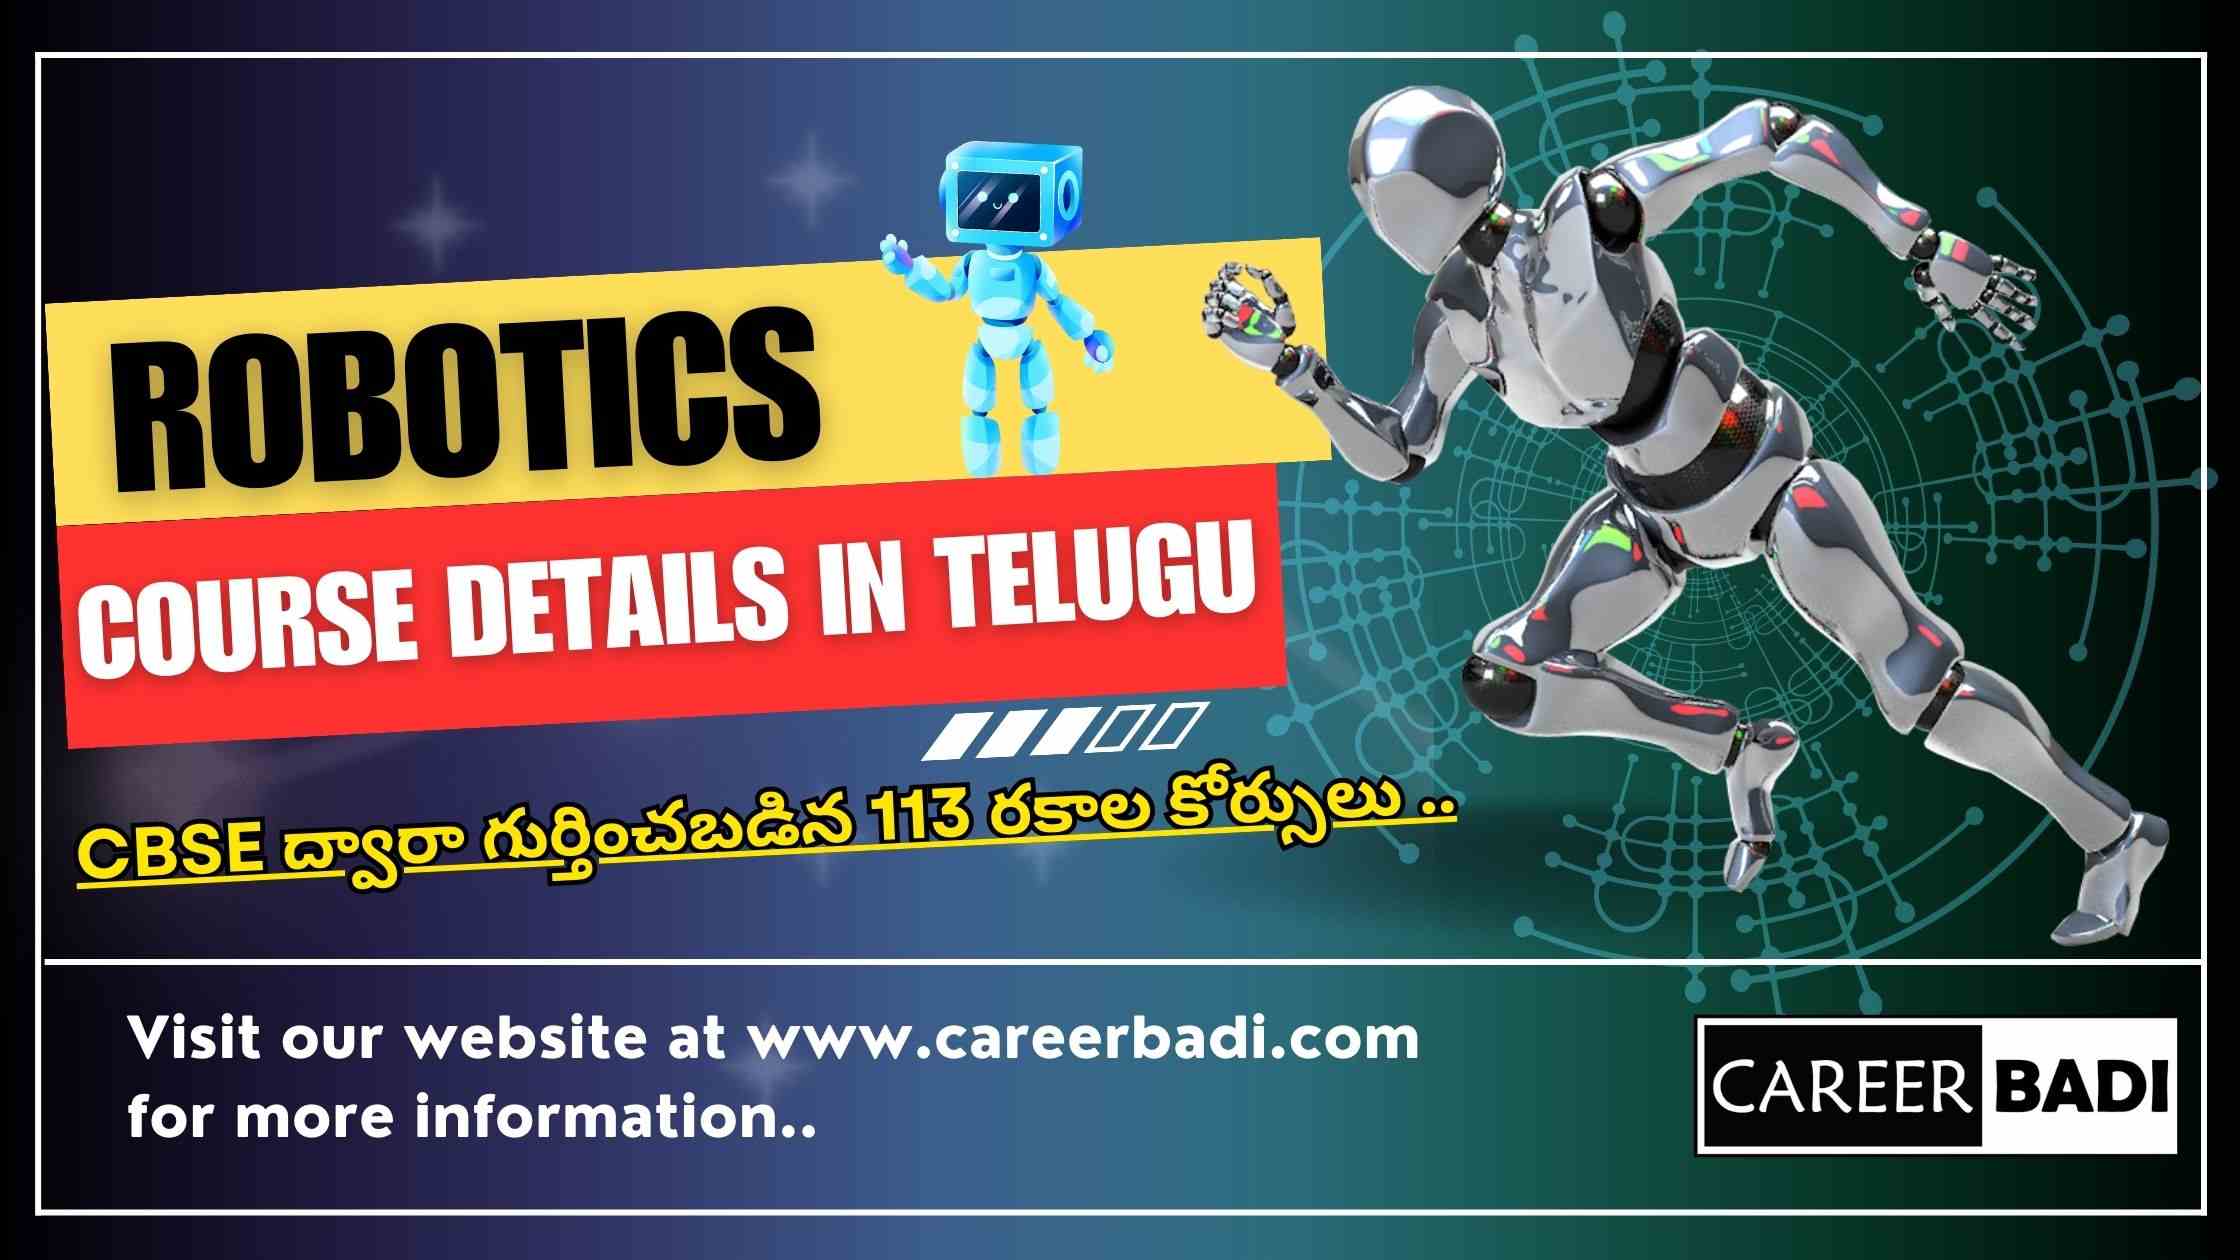 Robotics Course Details in Telugu